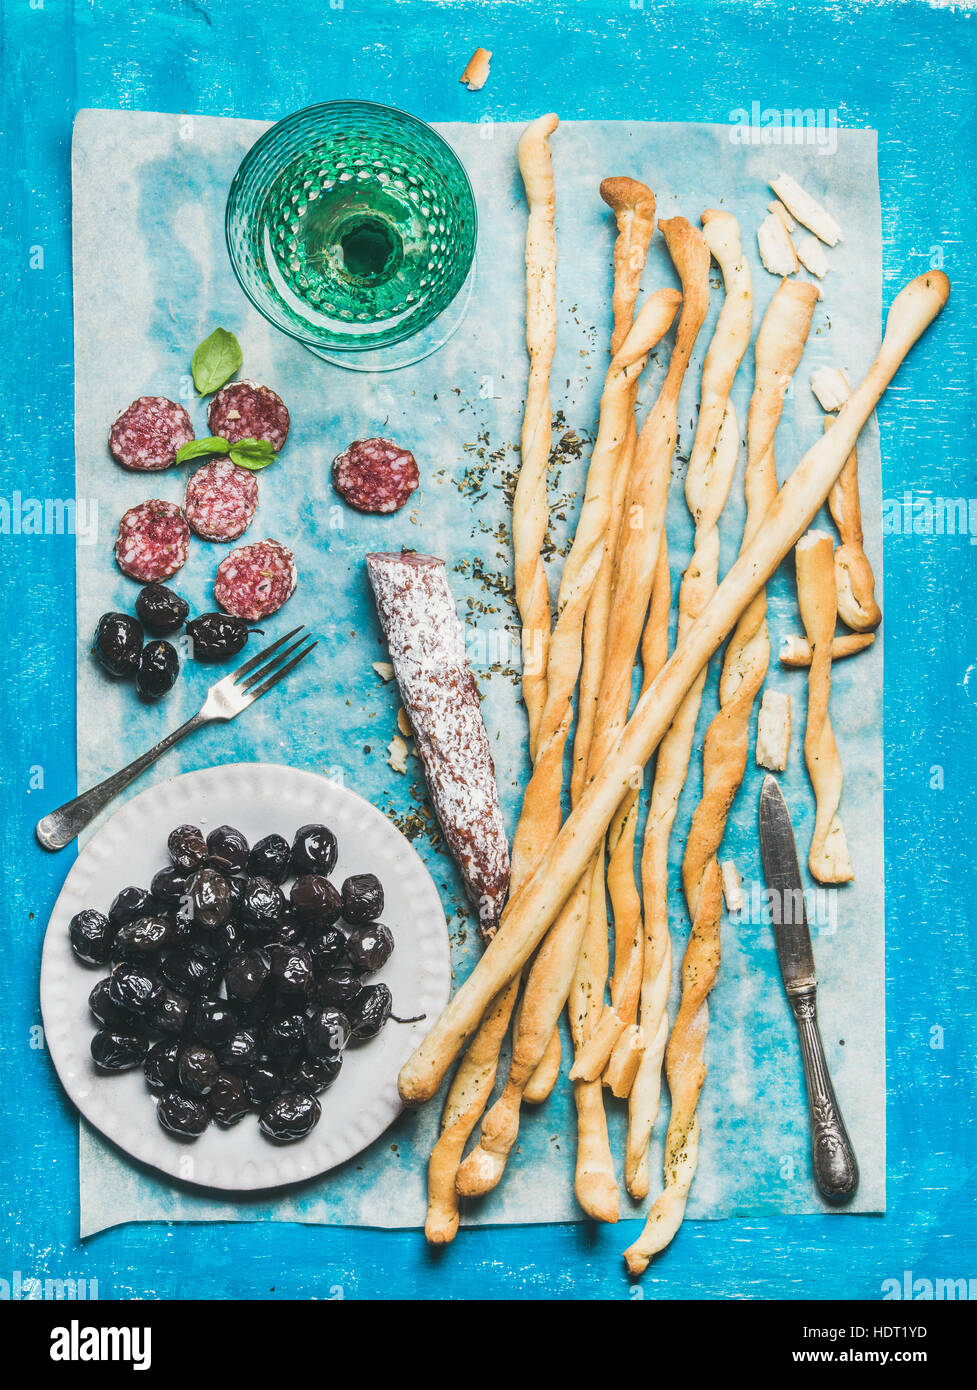 Grissini bâtonnets de pain, des saucisses, des olives et du vin blanc, fond bleu Banque D'Images